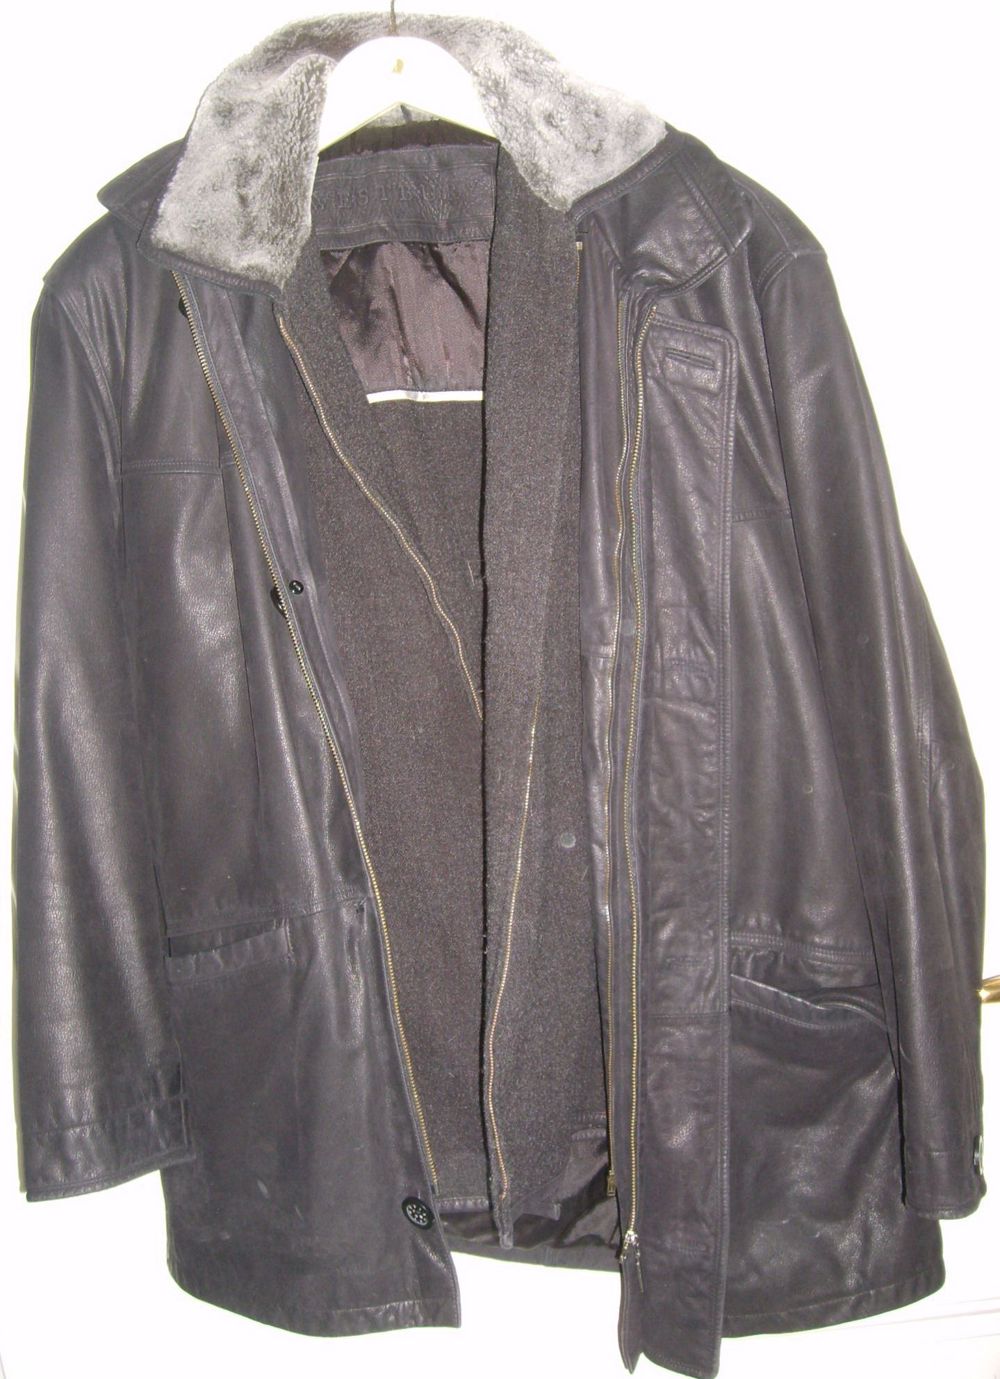 KG C&A Westbury Jacke Nappaleder schwarz Gr.50 Wintereinsatz kaum getragen Herrenkleidung Lederjacke